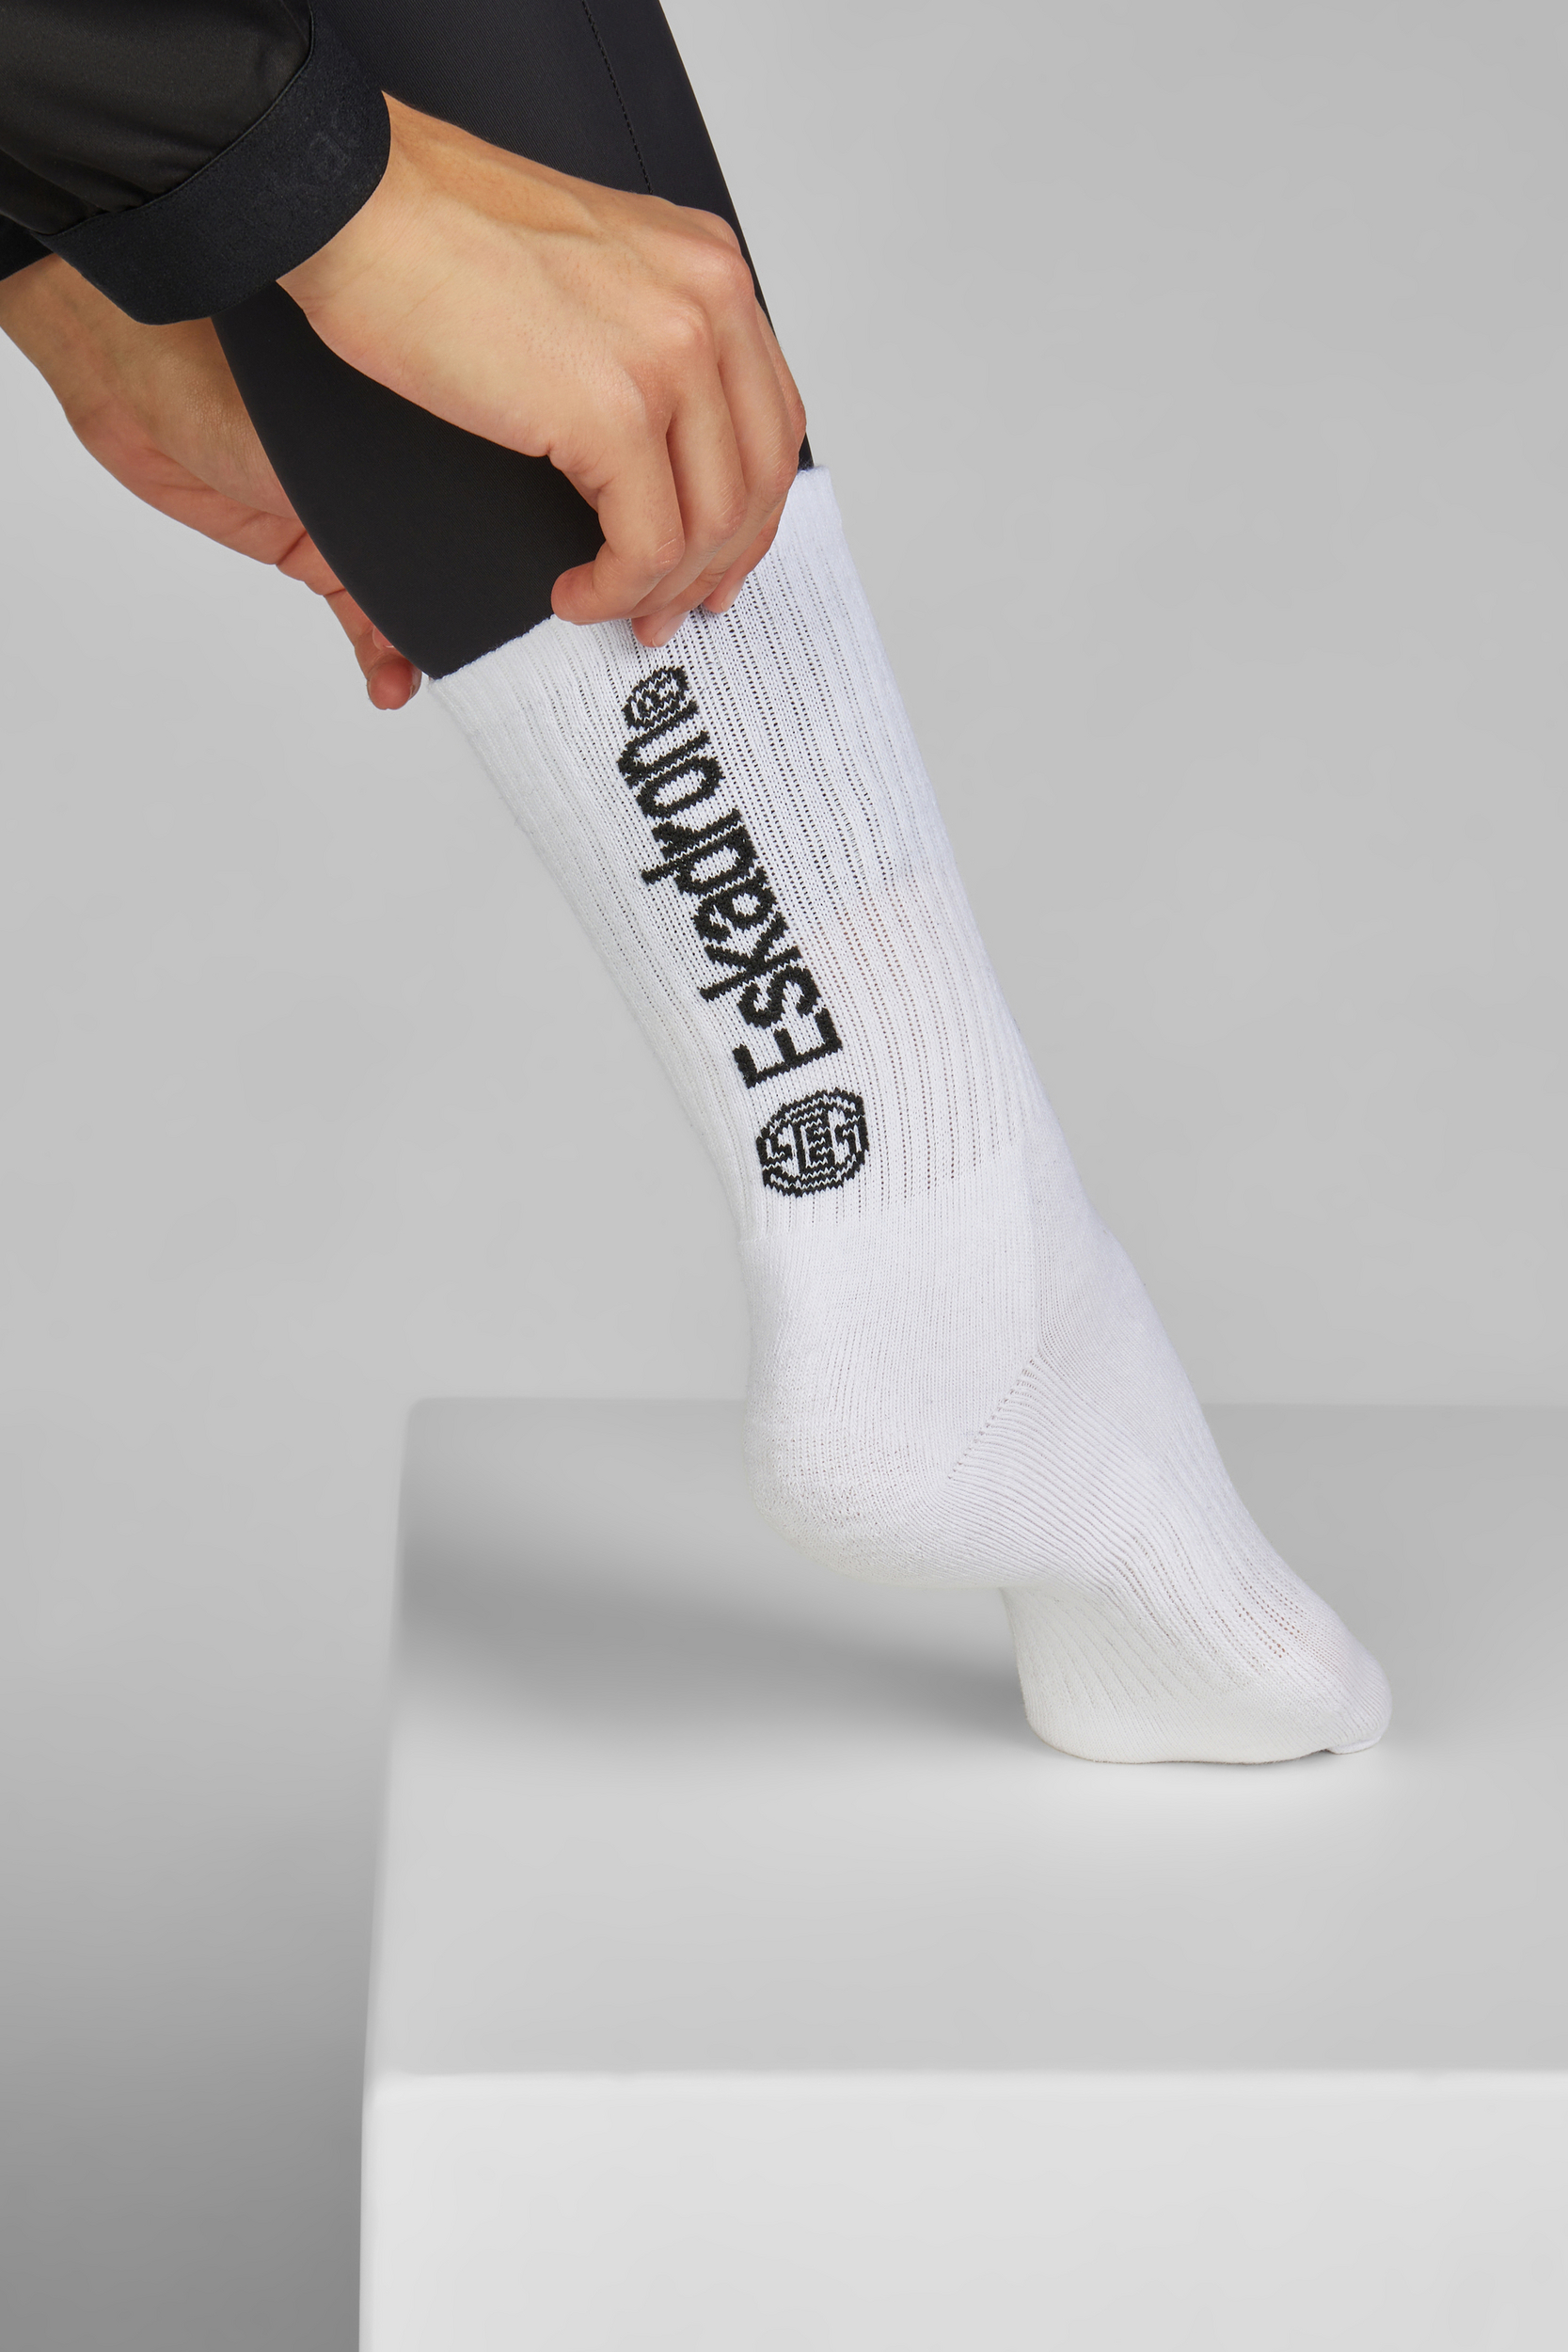 ESKADRON Socken Damen sportlich & stylisch Dynamic 24 - white - 38-40 - 1